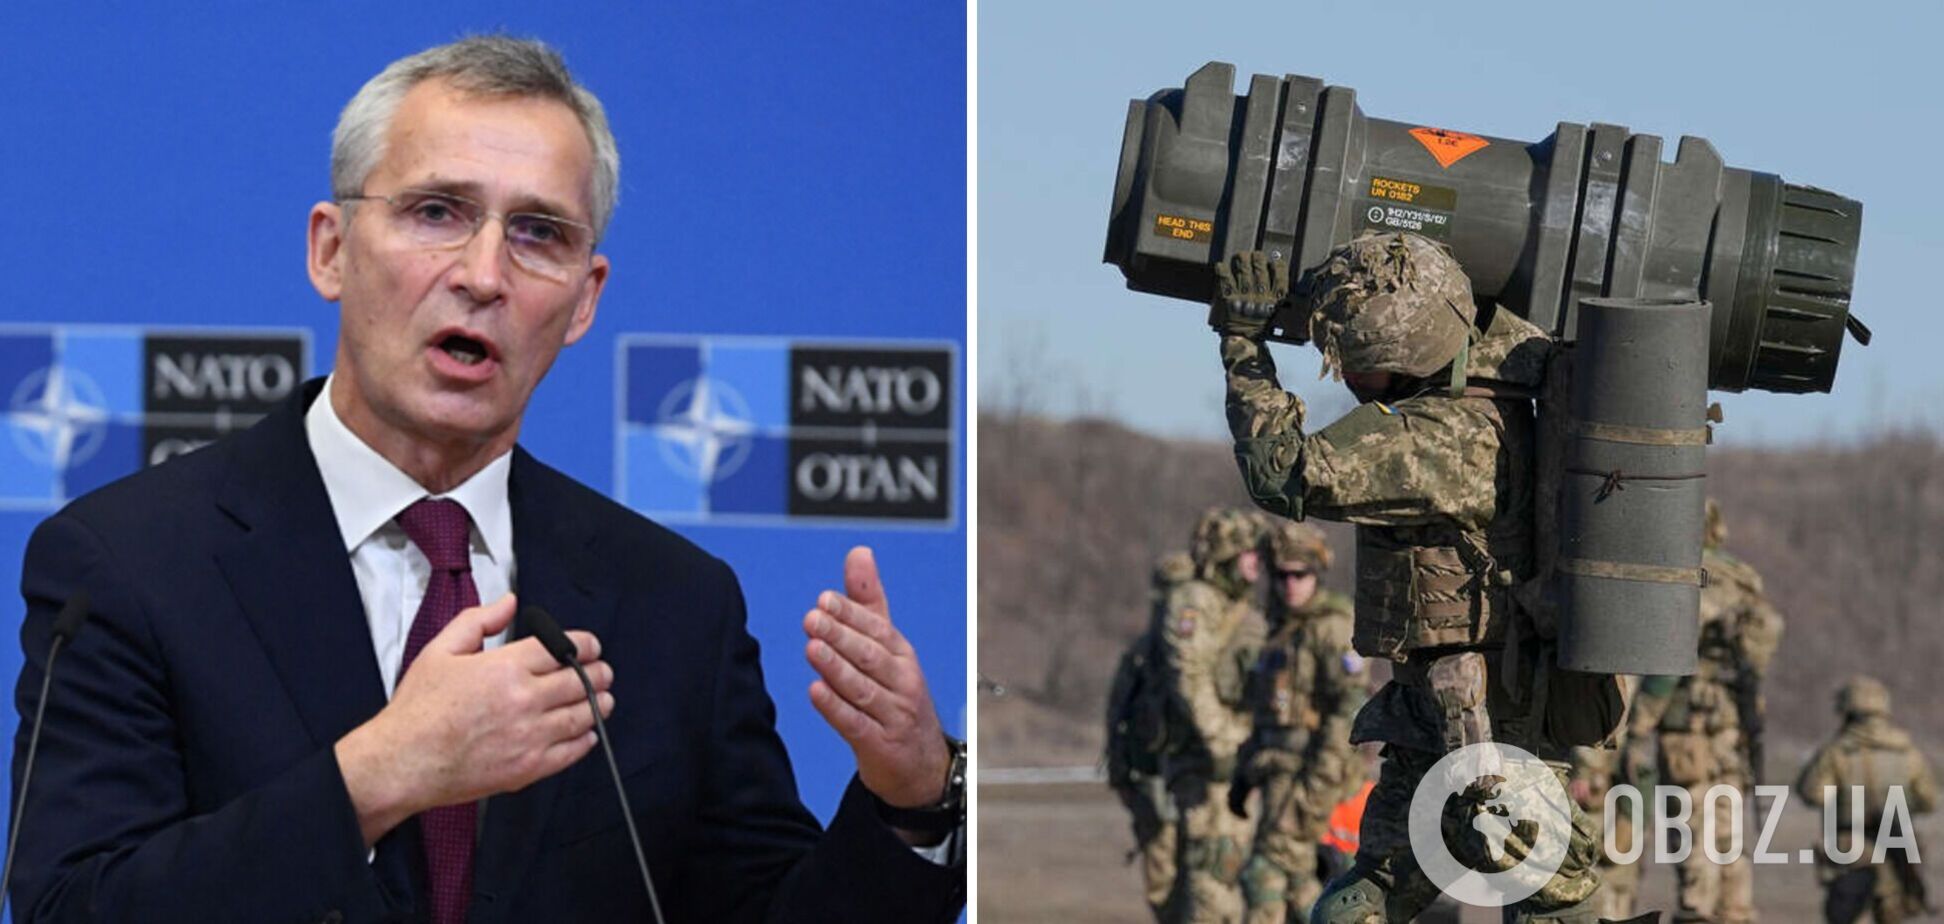 НАТО проведет обучение по ядерному сдерживанию на следующей неделе, – Столтенберг